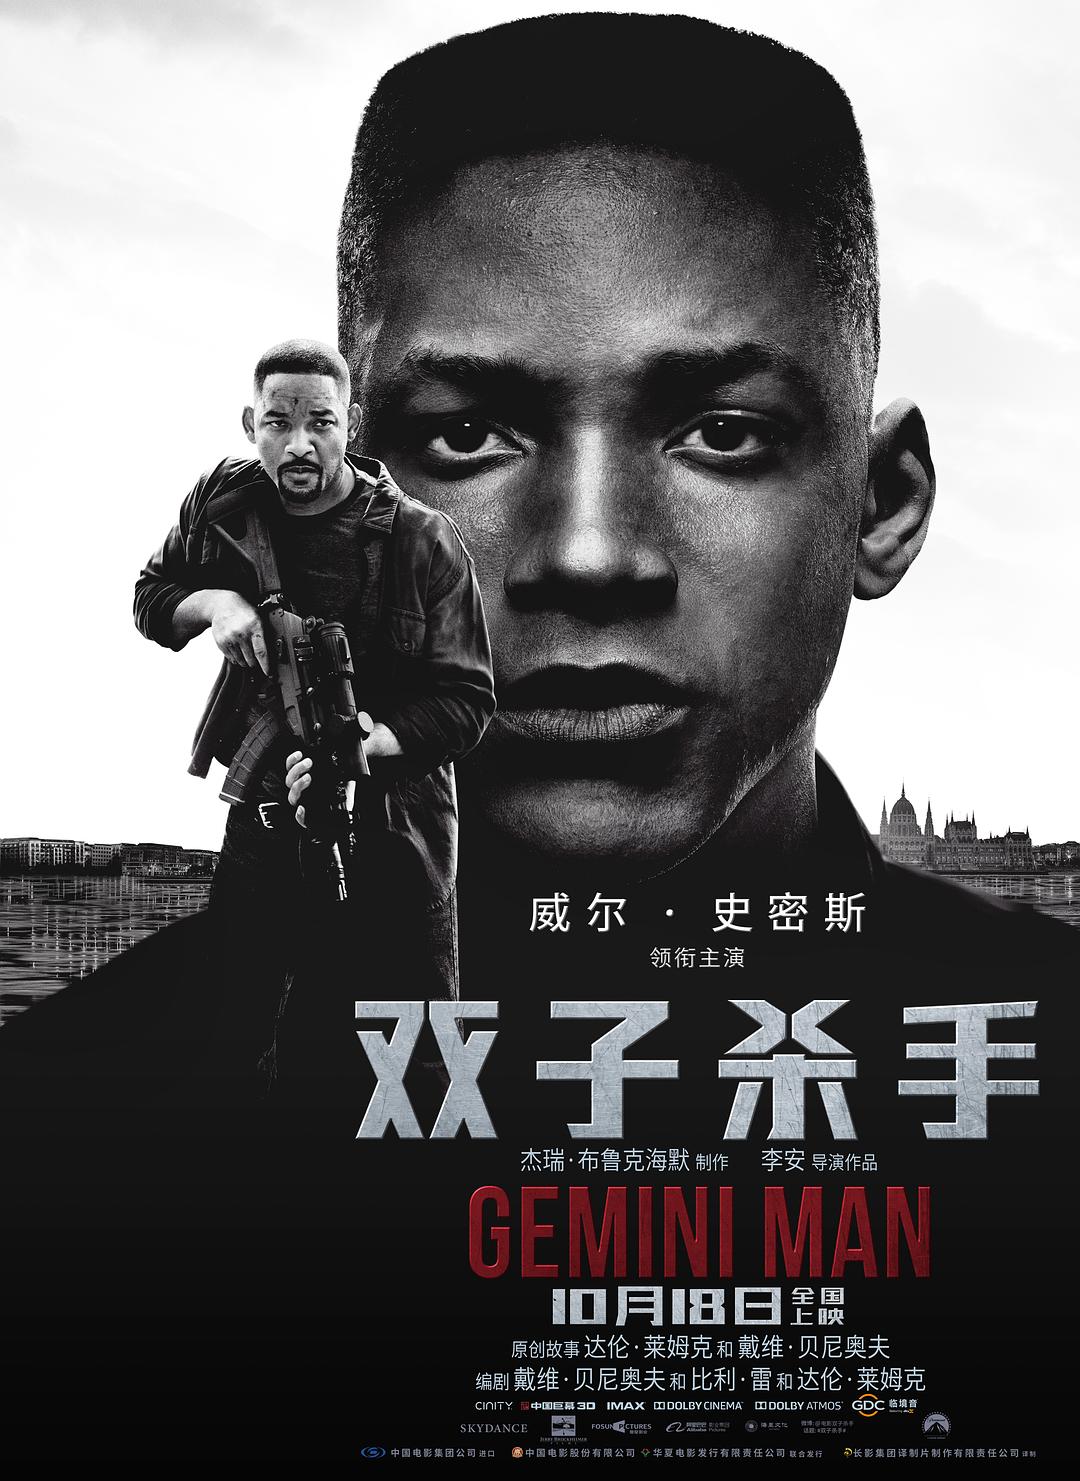 双子杀手/双子使命:叠影危机 Gemini.Man.2019.1080p.BluRay.x264-SPARKS 7.67GB-1.png